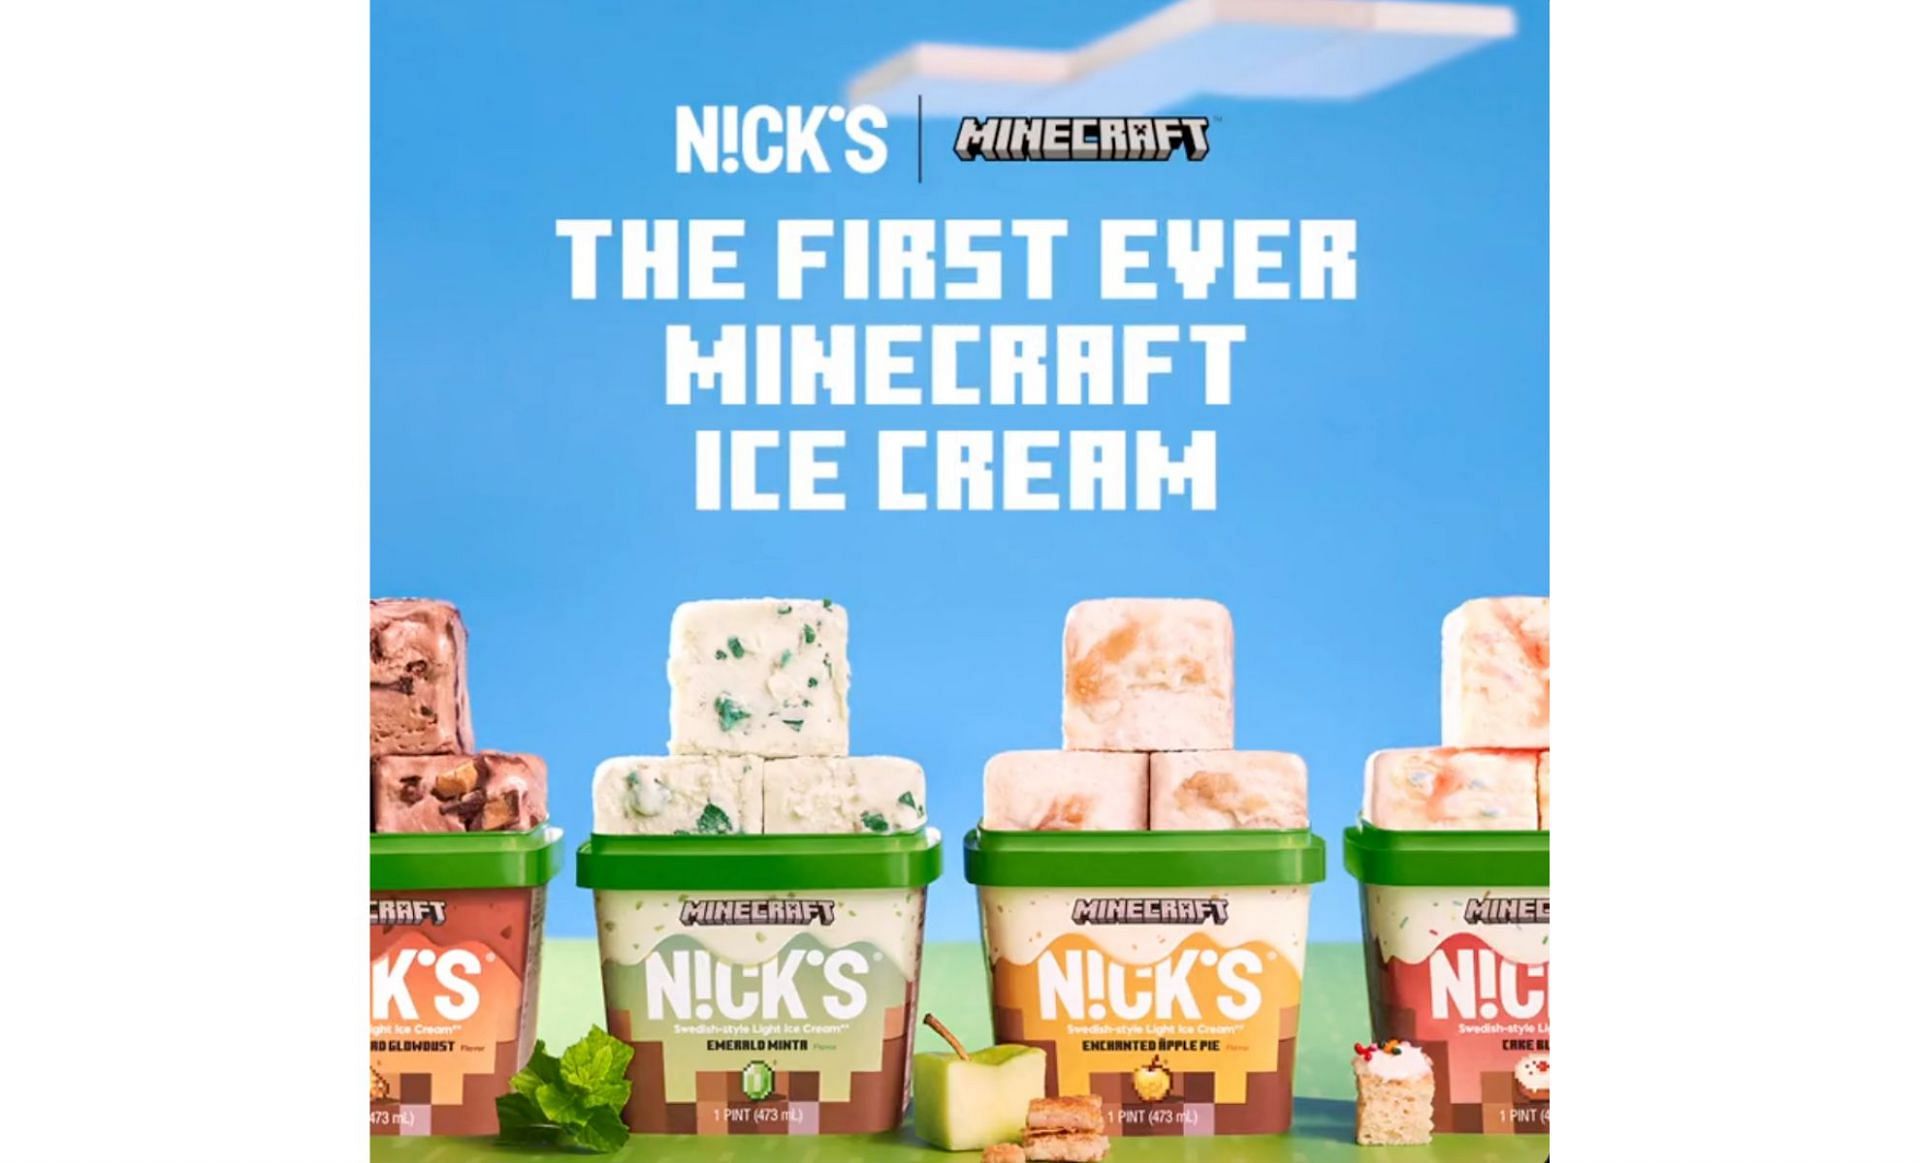 Minecraft's original flavor